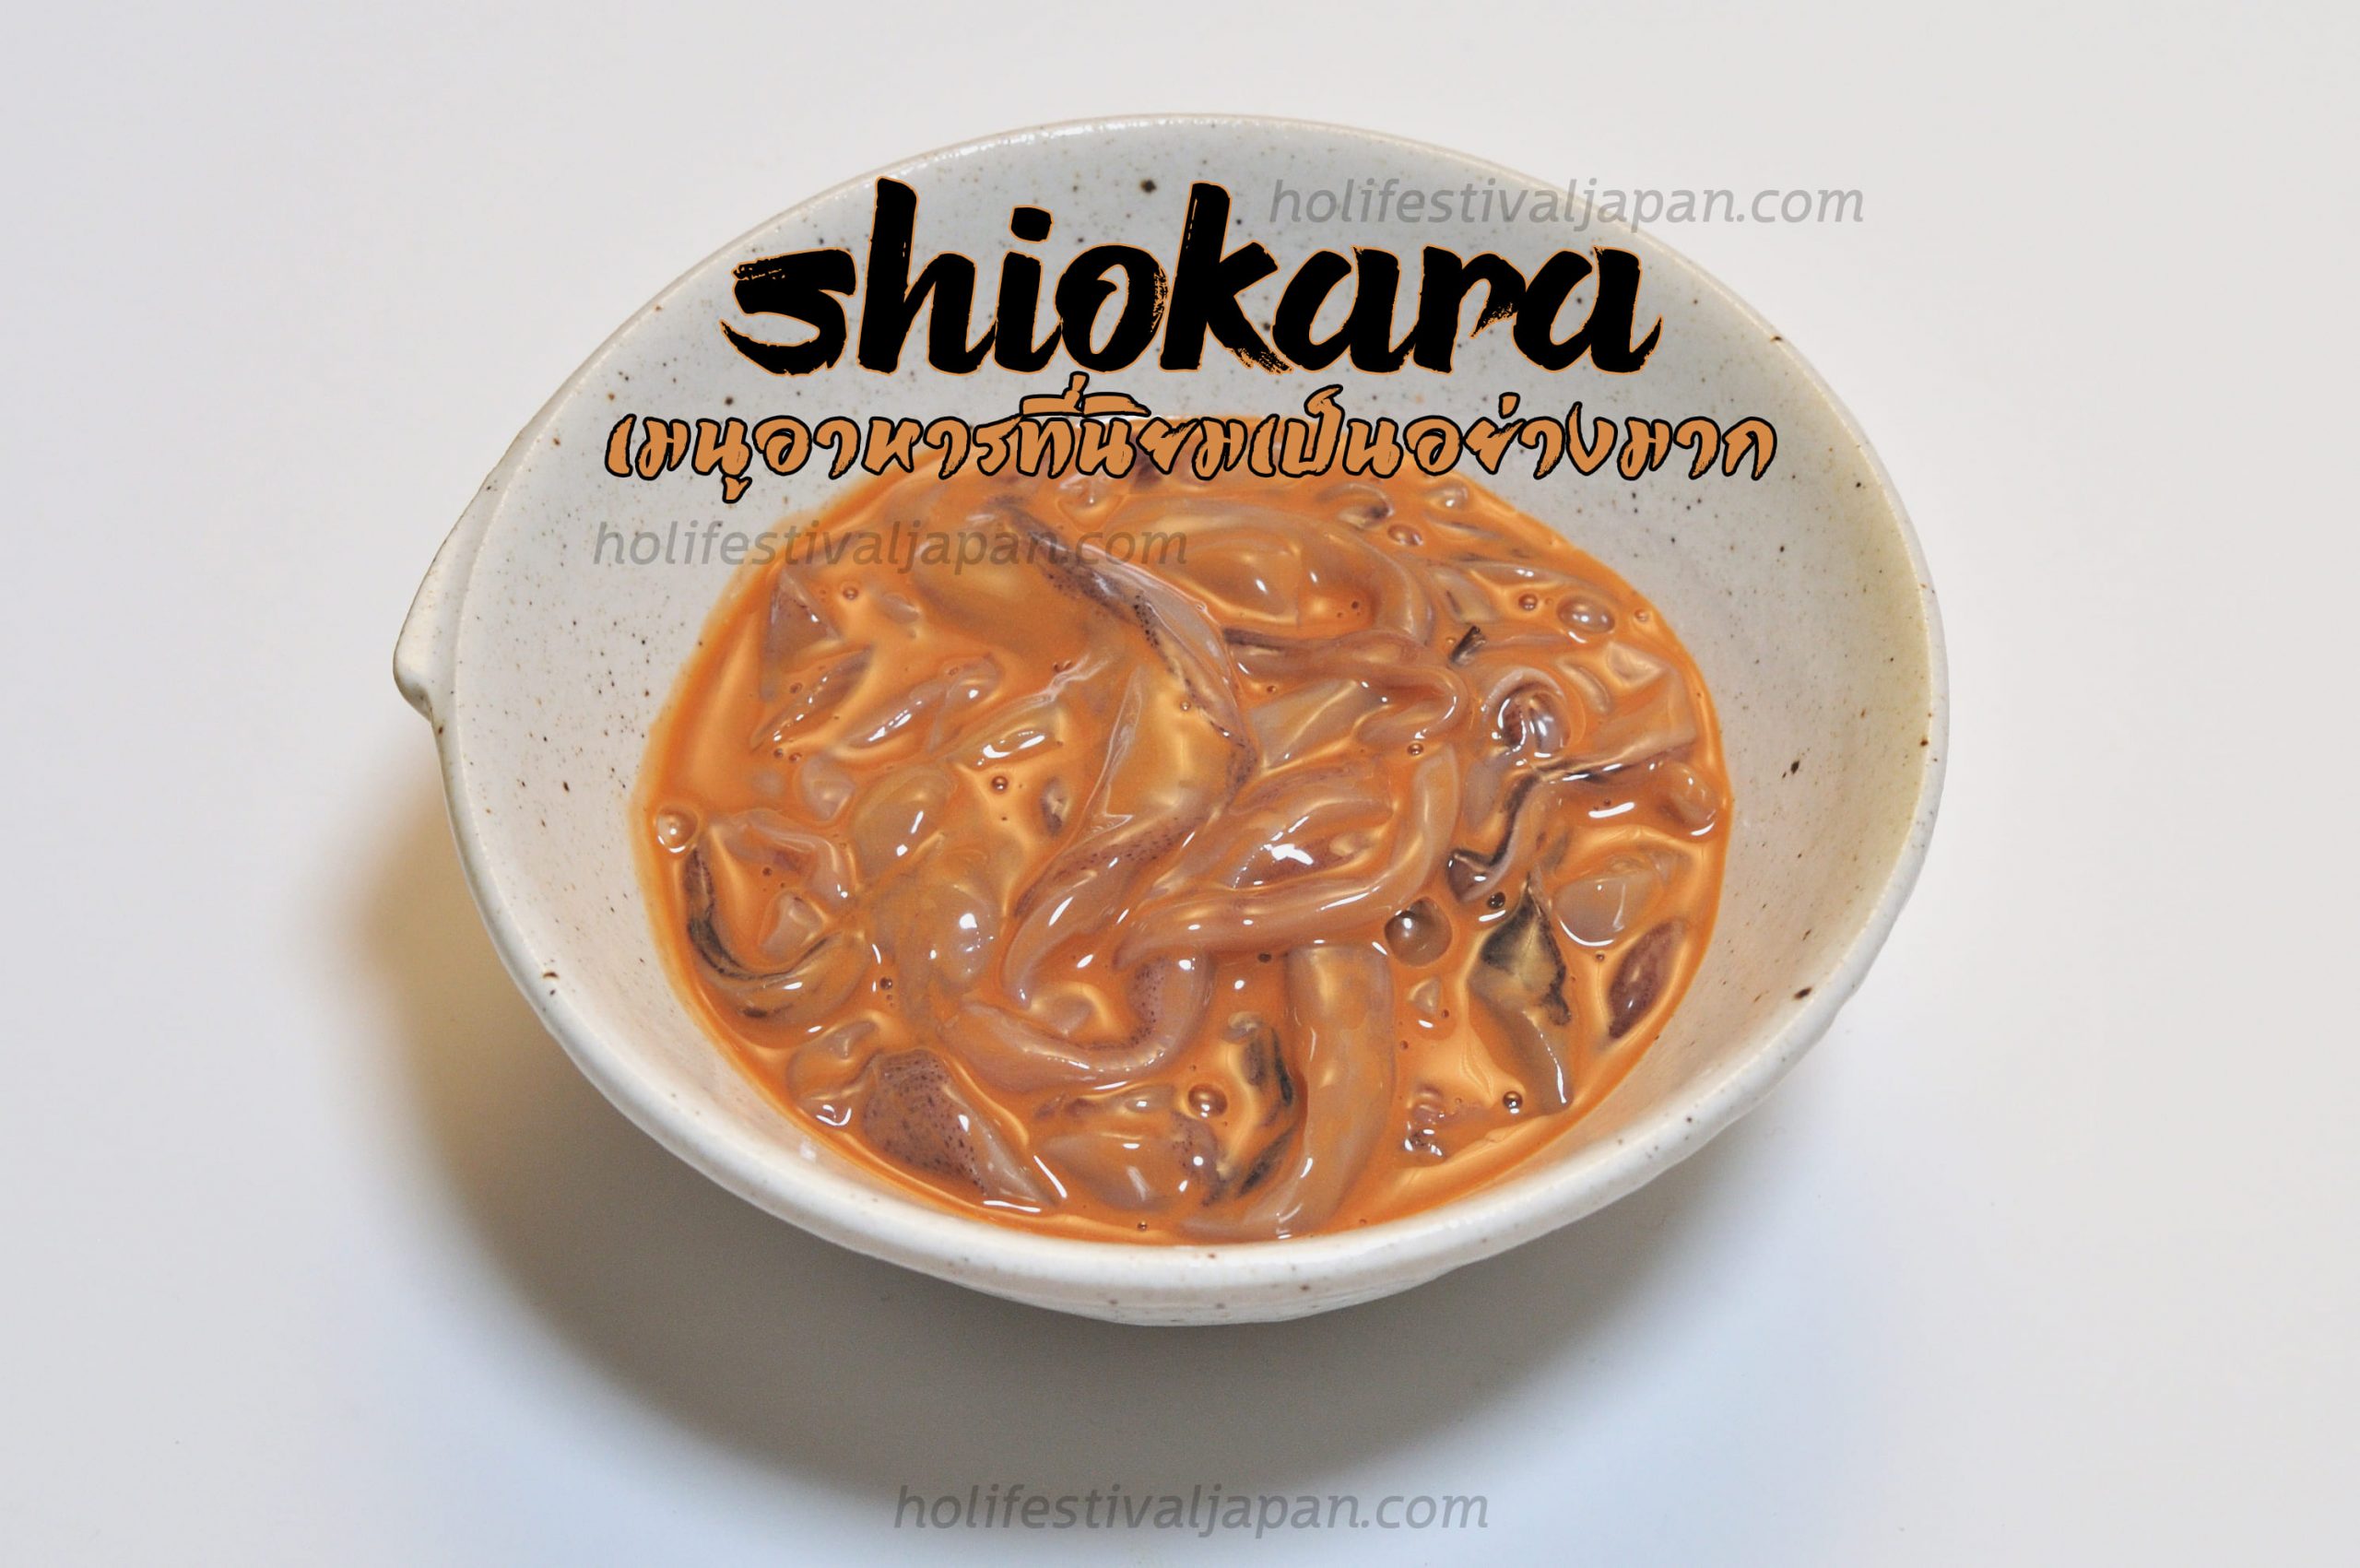 Shiokara เมนูอาหารที่นิยมเป็นอย่างมากจากชาวญี่ปุ่นแต่ว่าหาทานได้ยาก